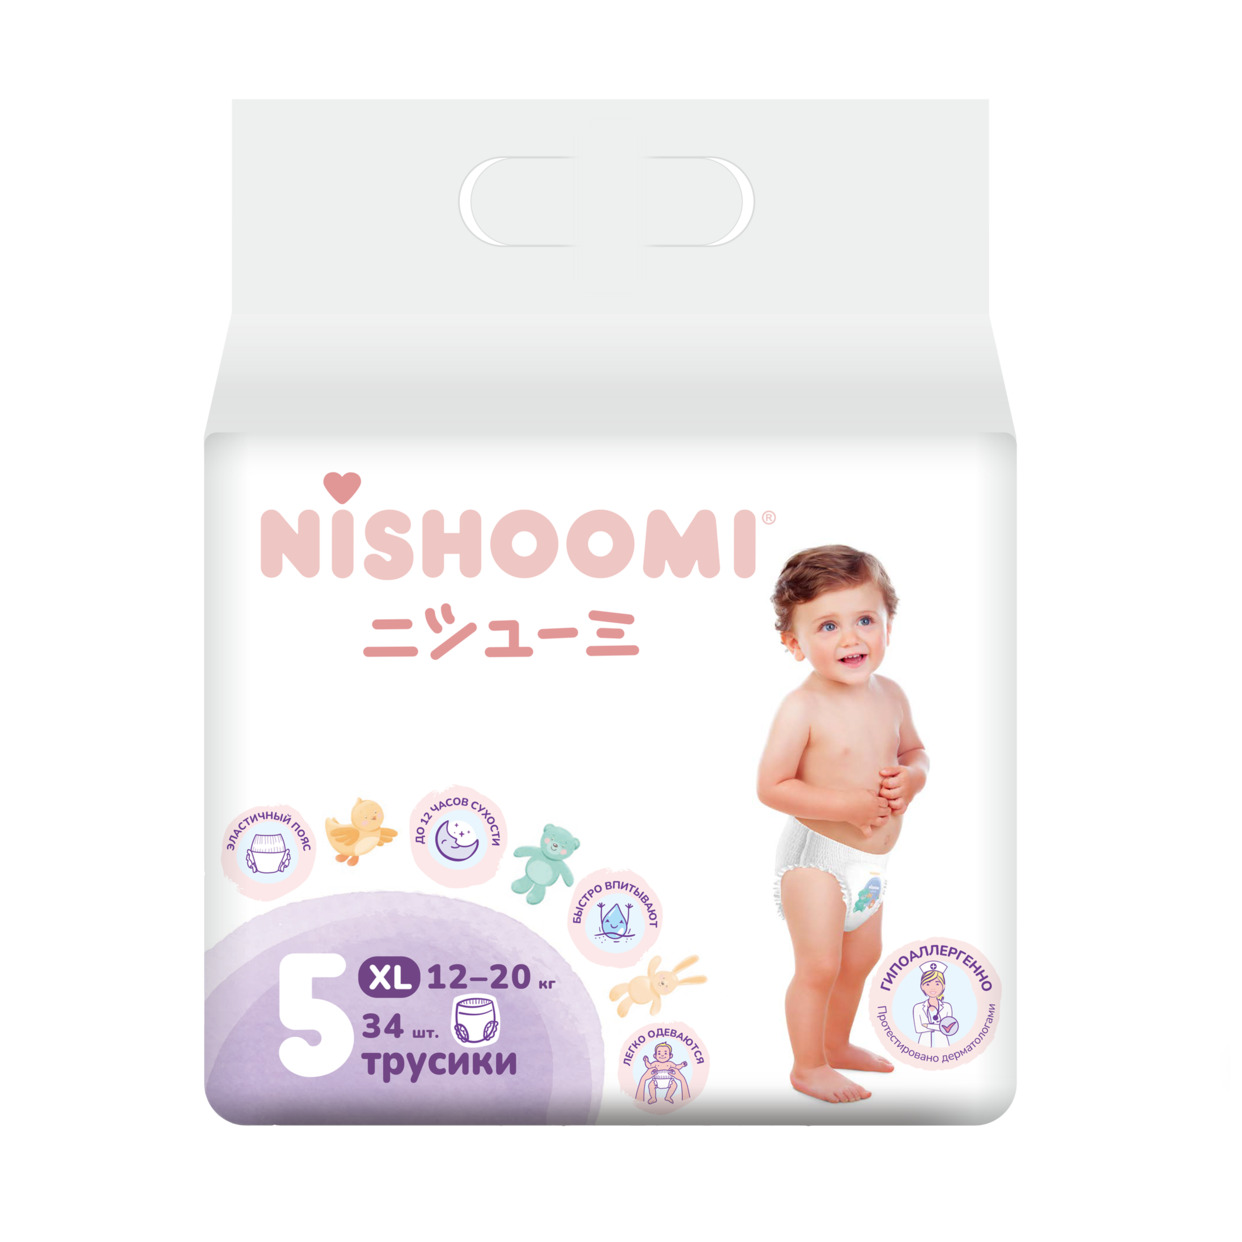 Изделия санитарно-гигиенические для ухода за детьми Nishoomi подгузники-трусики детские одноразовые. Размер «Макси» (XL (5)), для де тей весом 12-20 кг, 34 штуки в уп.